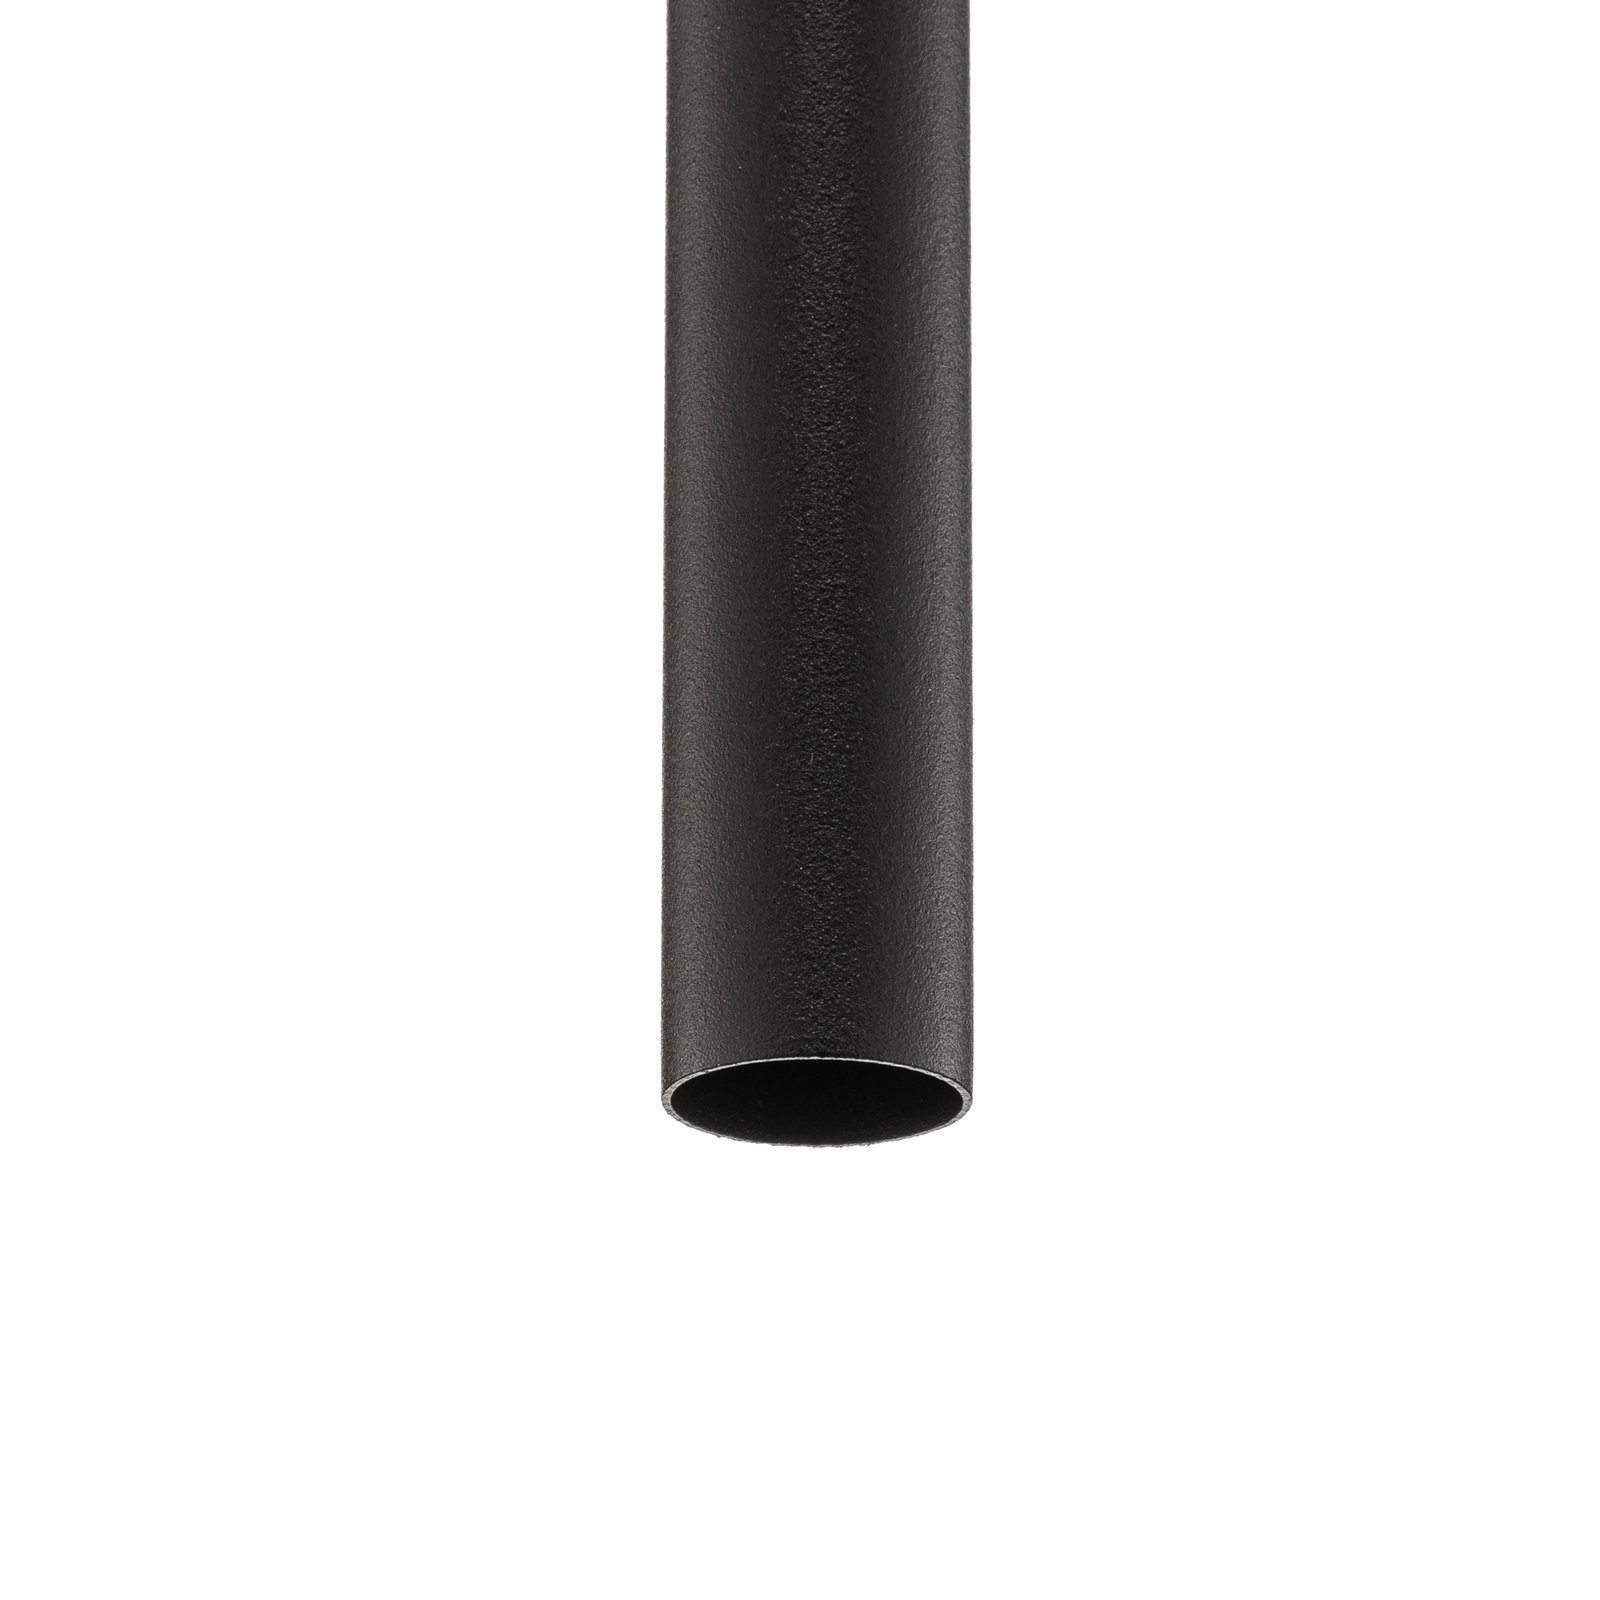 Pakabinamas šviestuvas "Laser", viena liepsna, juodas, 75 cm atspalvis